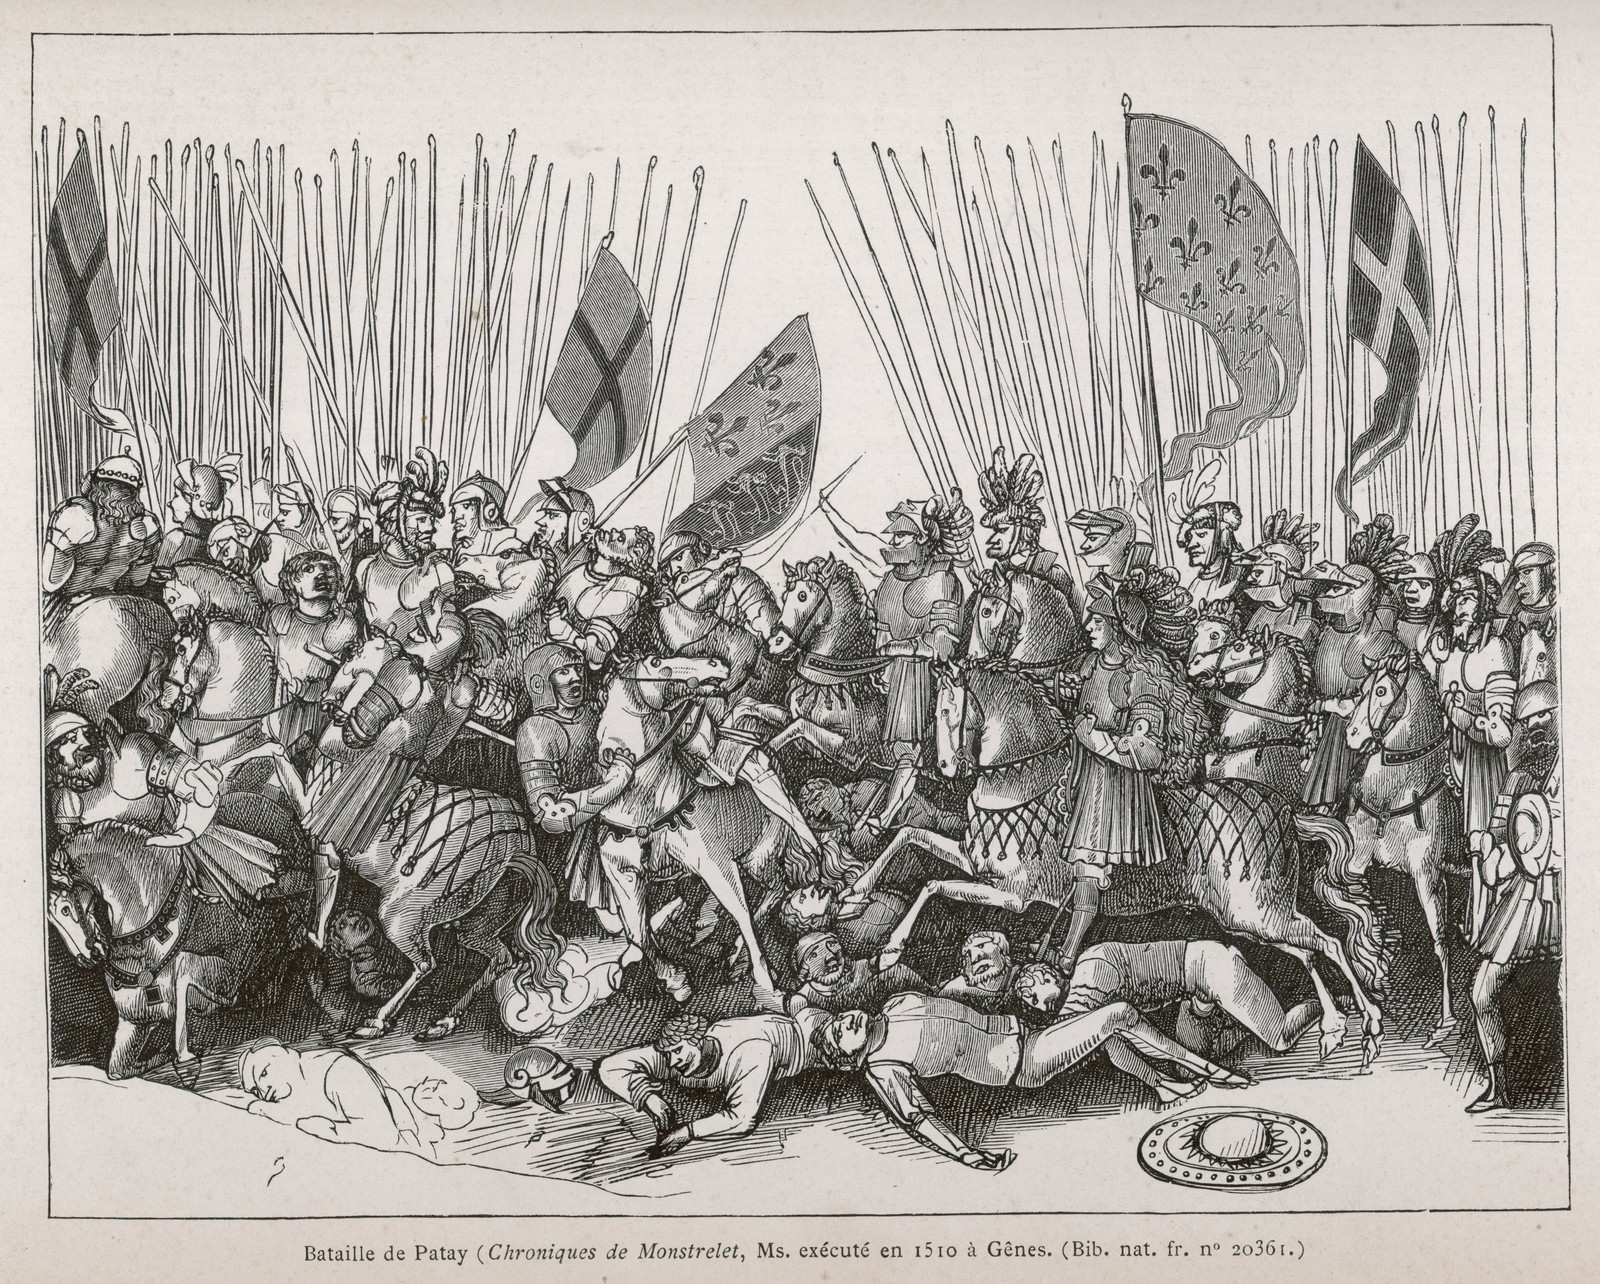 Jeanne d'Arc et le duc d'Alencon battent les Anglais de Talbot à Patay le 18 juin 1429,
Auteurs  : MARY EVANS/SIPA,
Numéro de reportage : 51051641_000001.